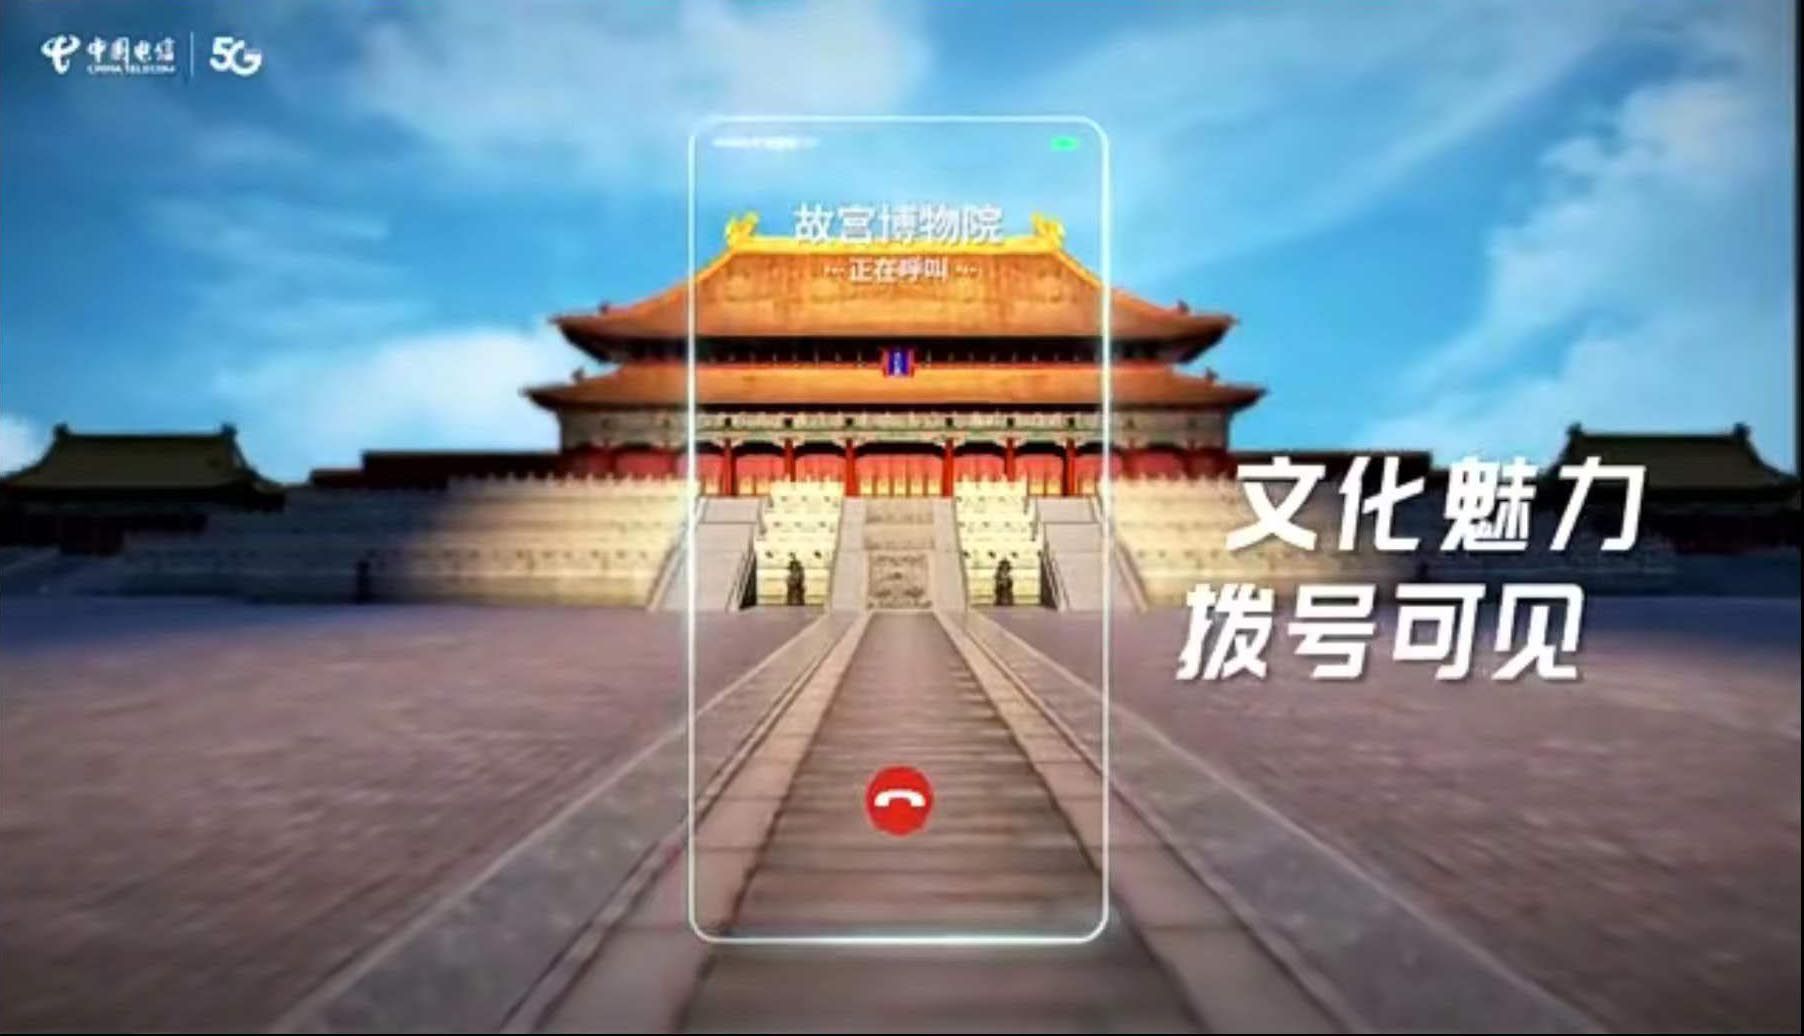 中国电信商务视频彩铃小程序入驻钉钉